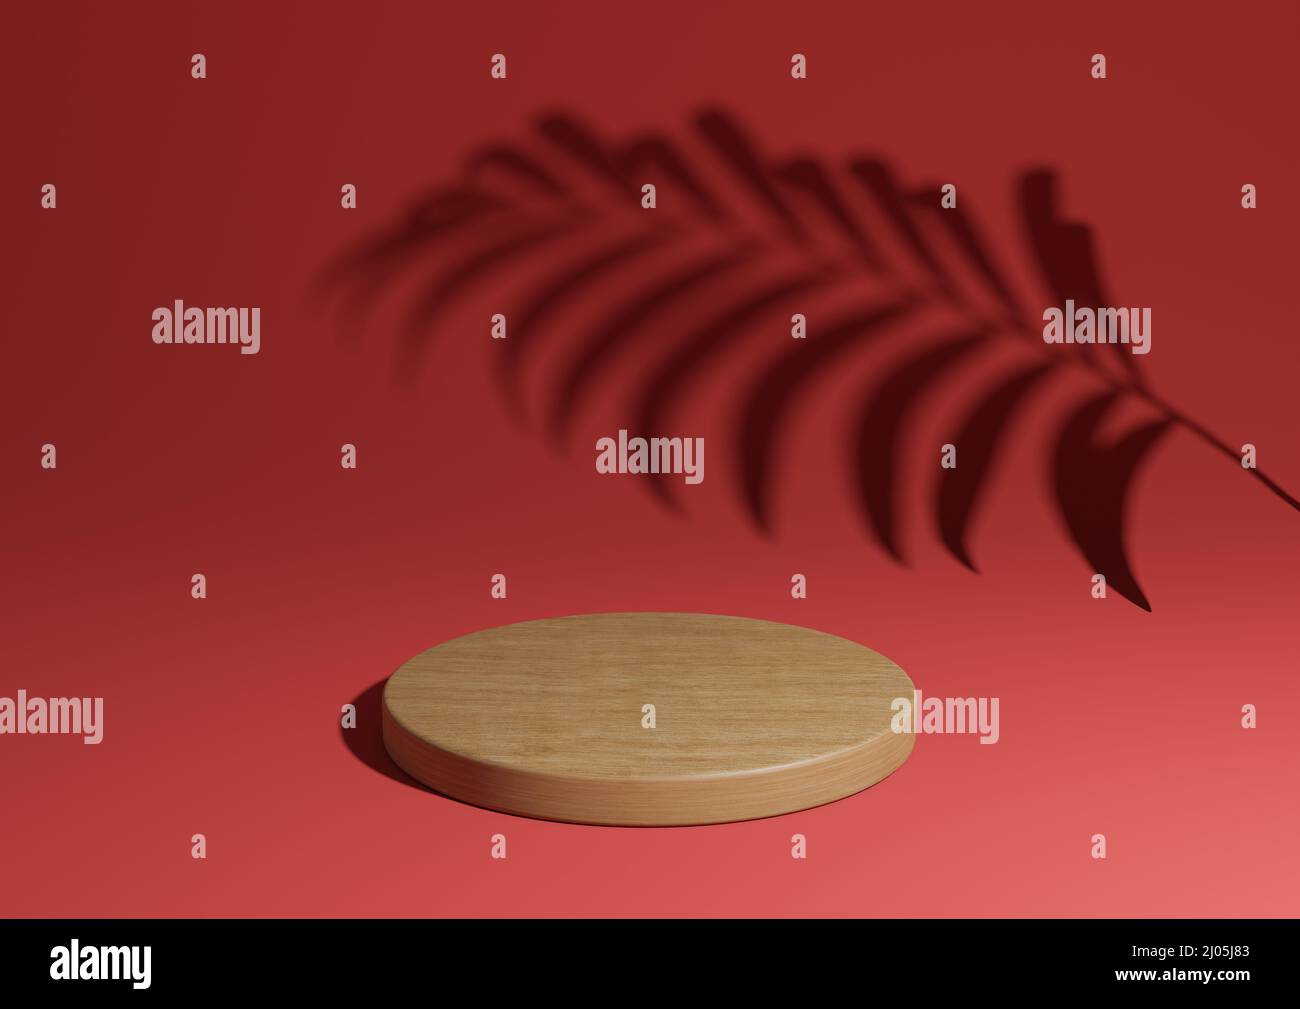 Marrone chiaro, rosso scuro semplice 3D rendono minimo la composizione del prodotto naturale display con un podio di legno o stand con ombra di foglia di palma sullo sfondo Foto Stock